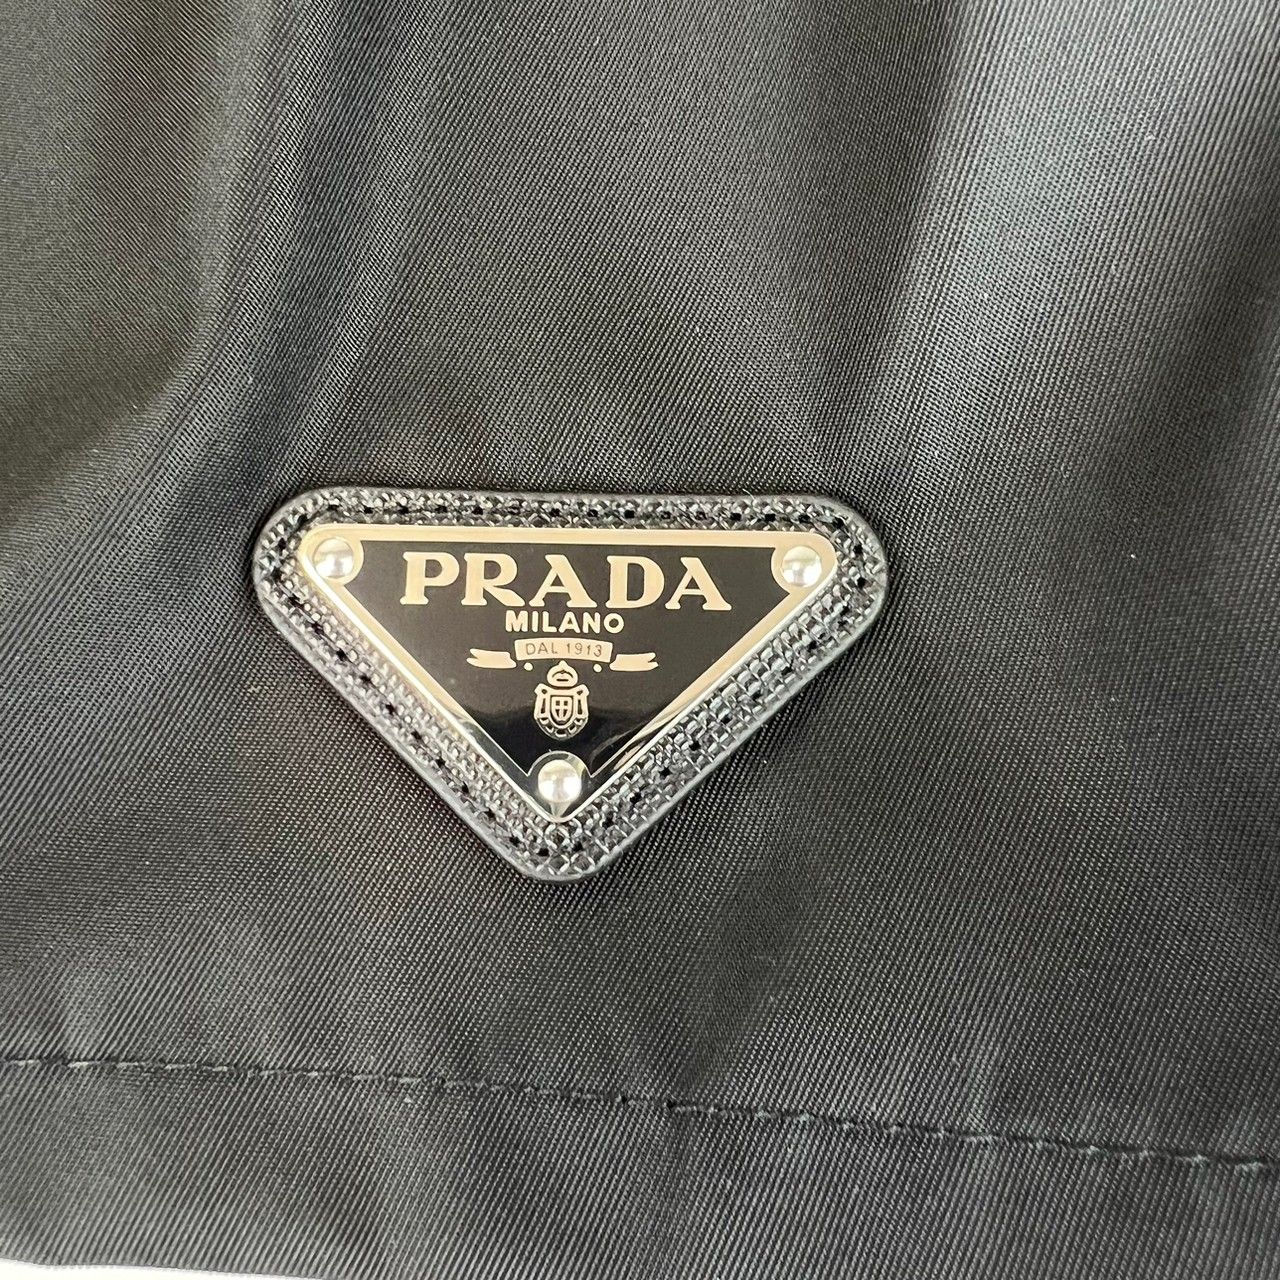 新品未使用 PRADA プラダ レーヨン ショートパンツ サイズ38 - メルカリ